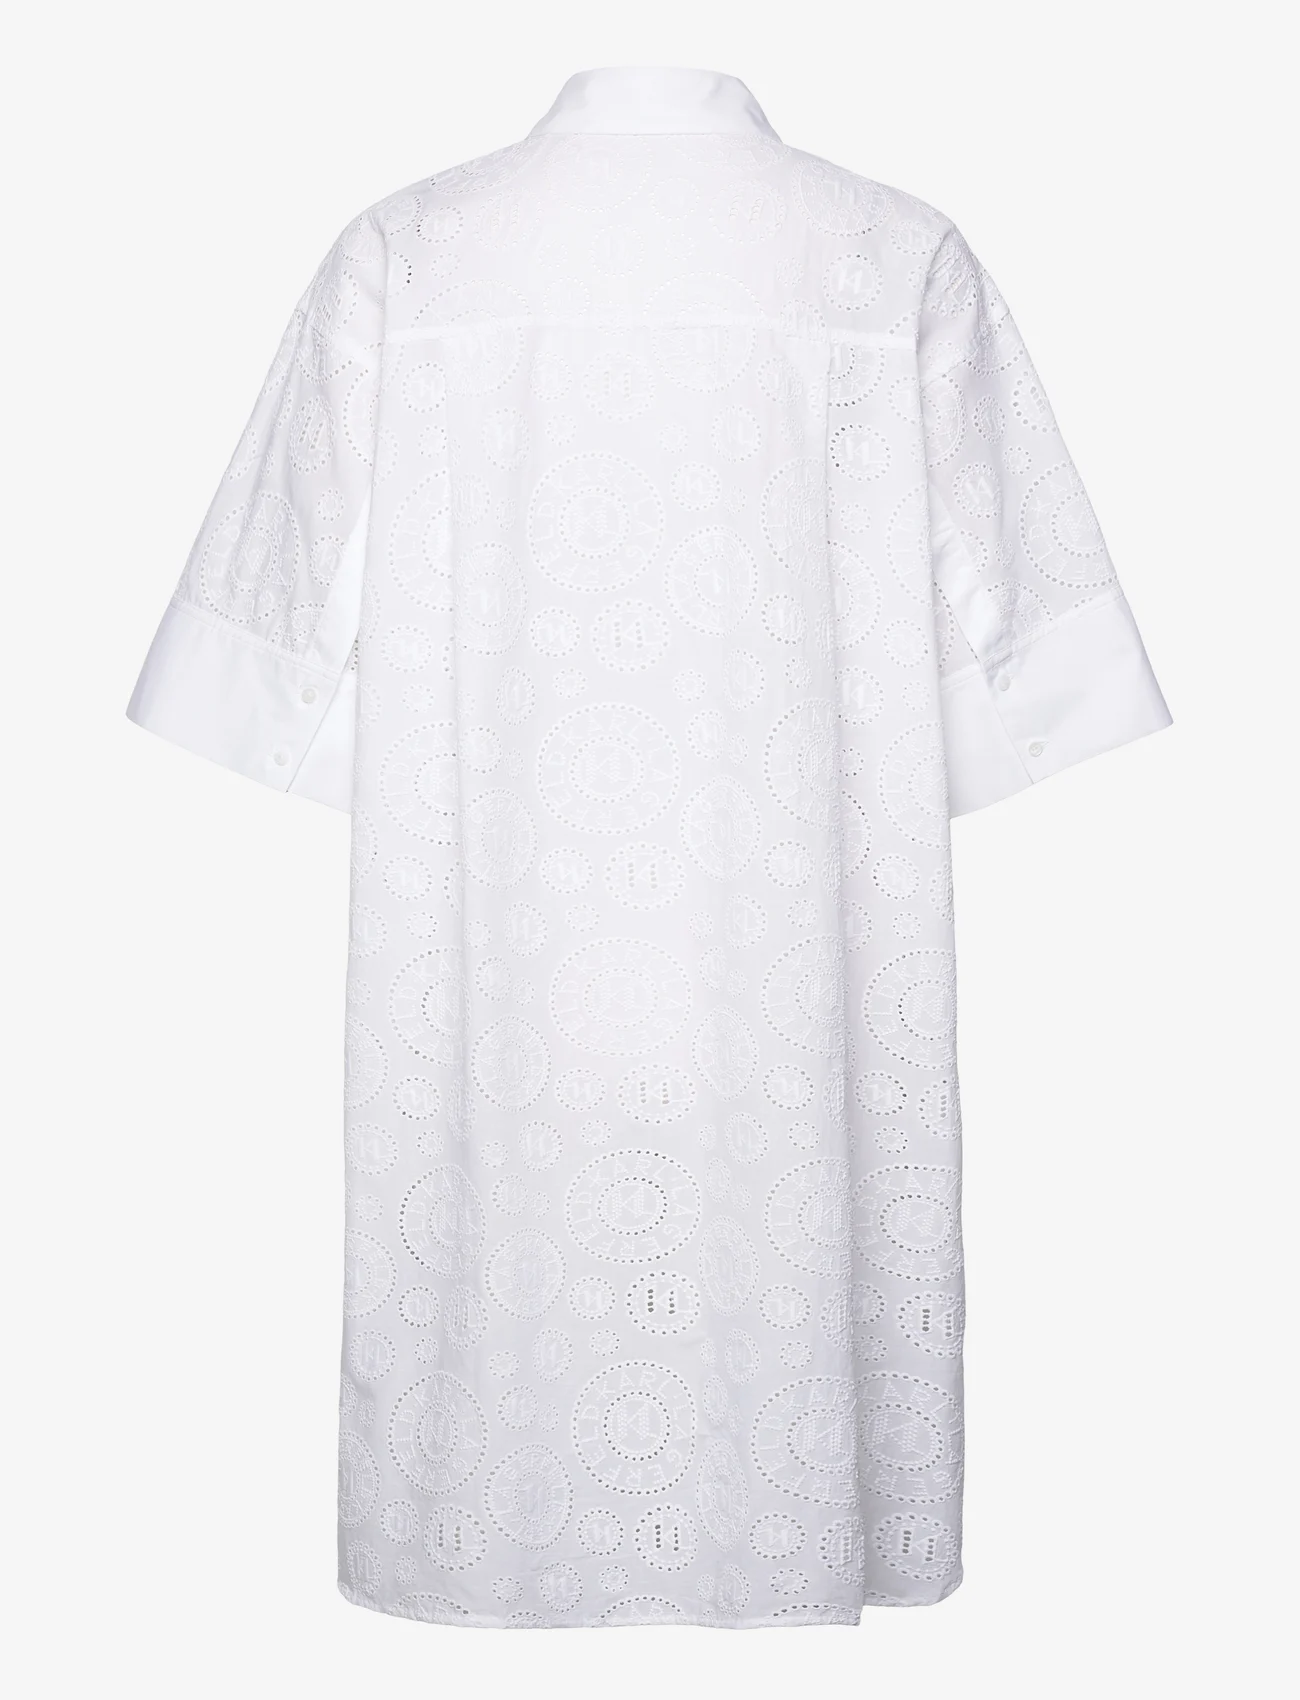 Karl Lagerfeld - Broderie Anglaise Shirtdress - marškinių tipo suknelės - white - 1